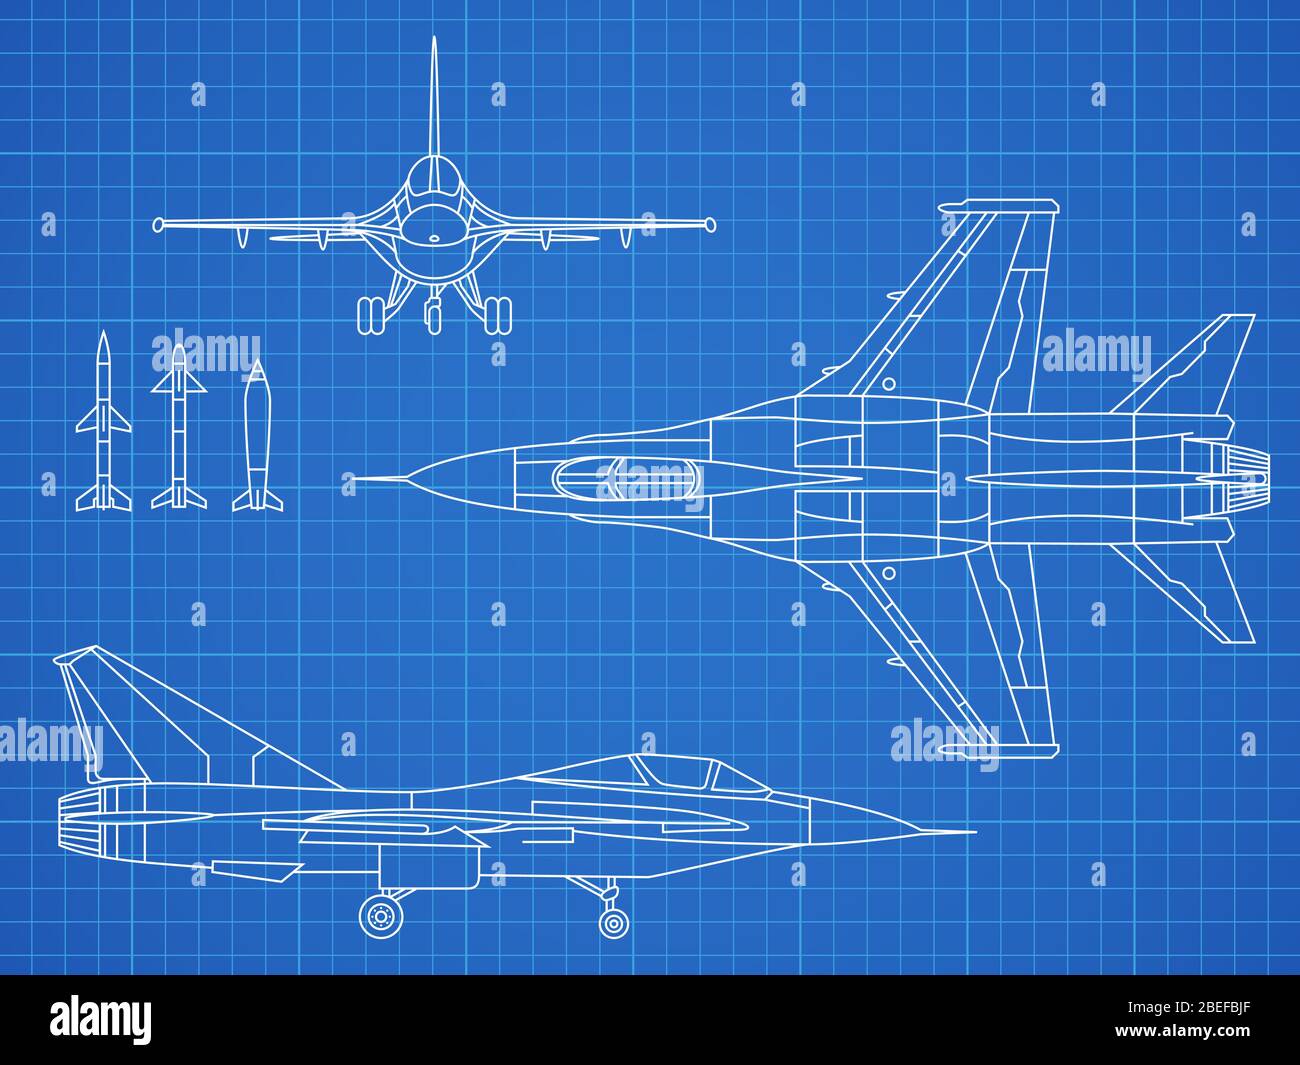 Militärische Jet-Flugzeuge Zeichnung Vektor Entwurf. Flugzeug militärischen  Plan Blaupause Illustration Stock-Vektorgrafik - Alamy